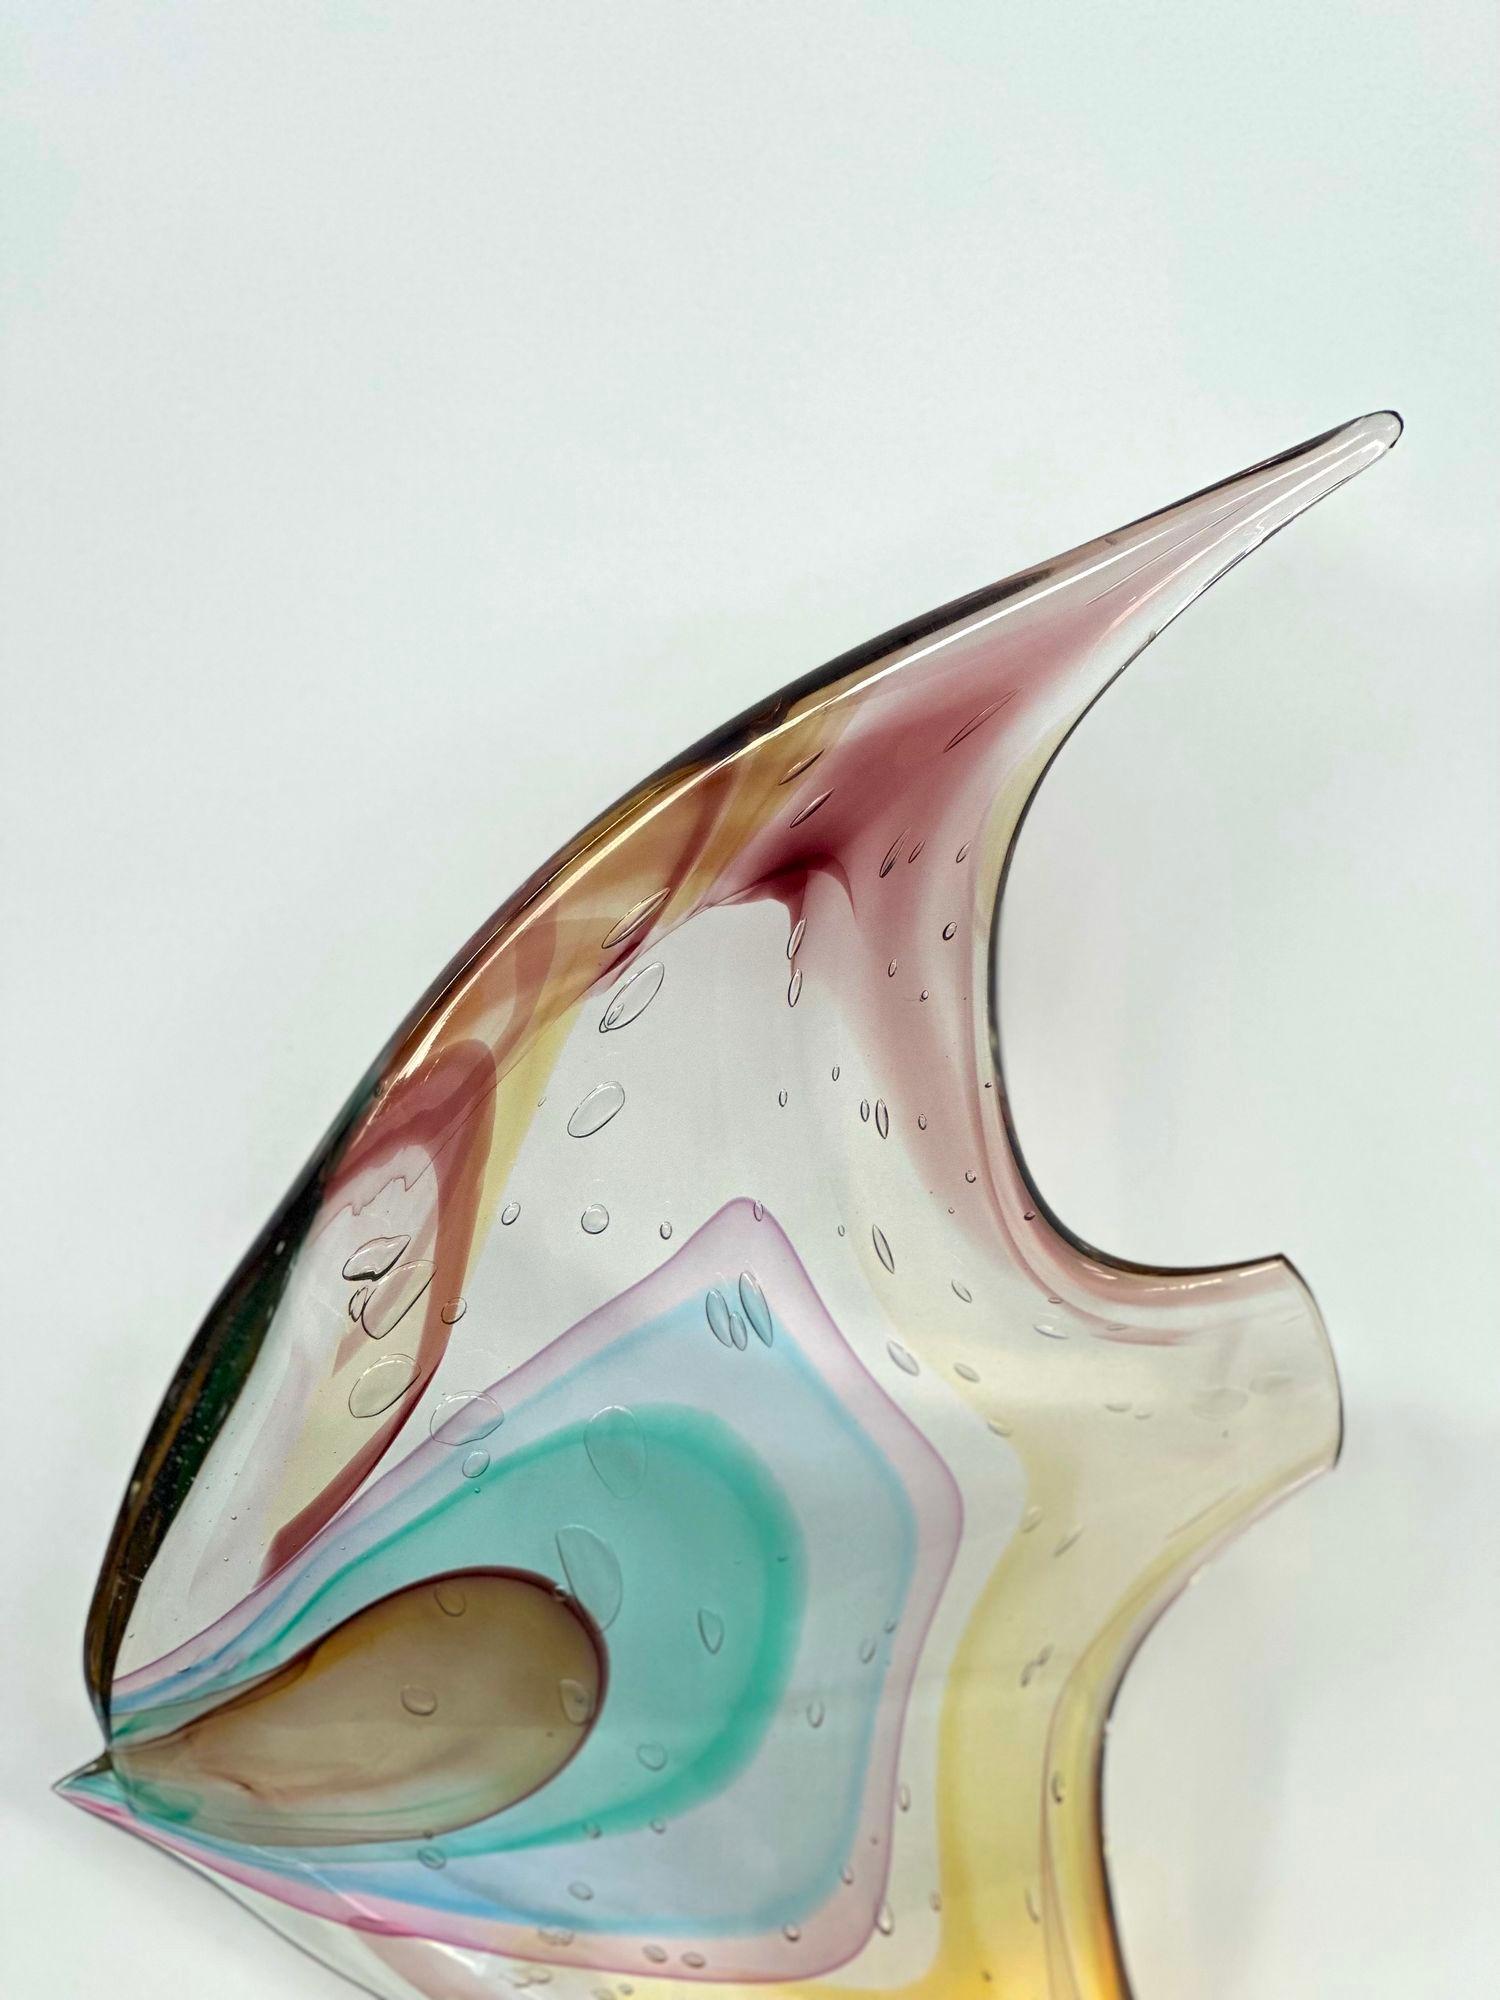 Fischskulptur aus Murano-Glas von Sergio Costantini für Vetro Artistico Murano mit Bernstein-, Blau-, Lila- und Rosatönen. 
Hergestellt in Italien, 20. Jahrhundert (mit Aufkleber und Signatur).
Abmessungen:
18,25 